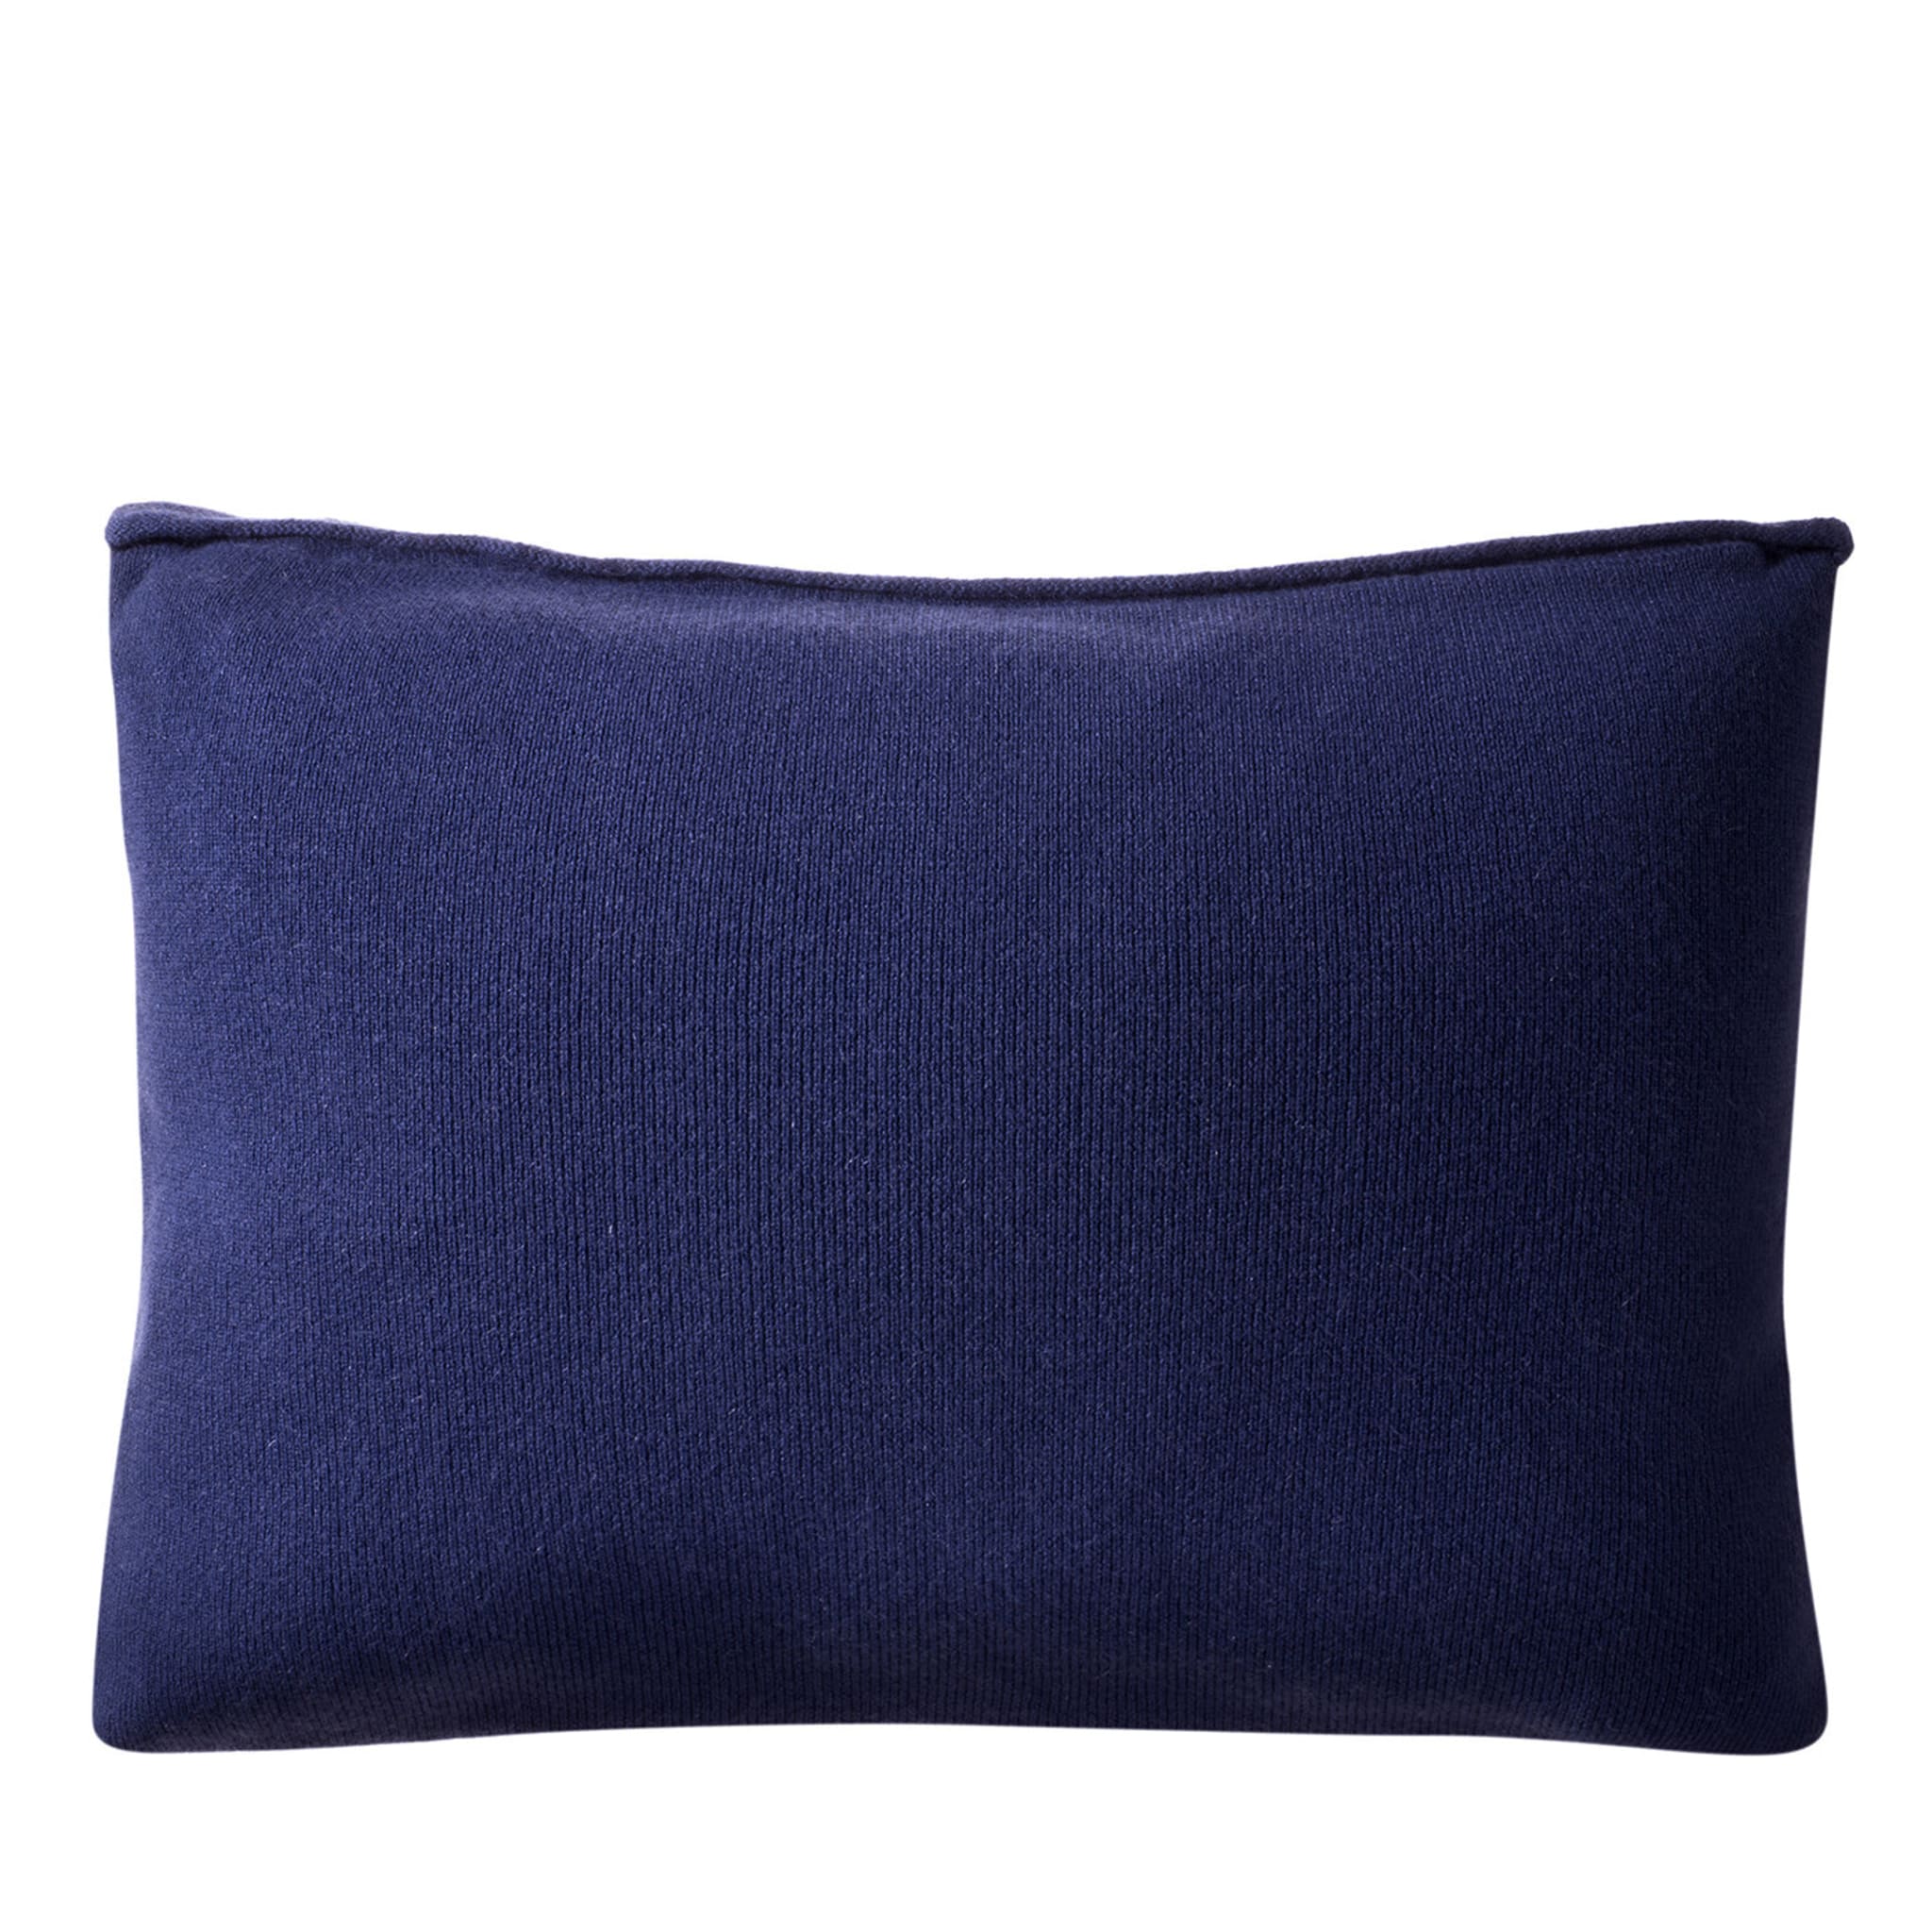 Blue Rectangular Cushion - Main view